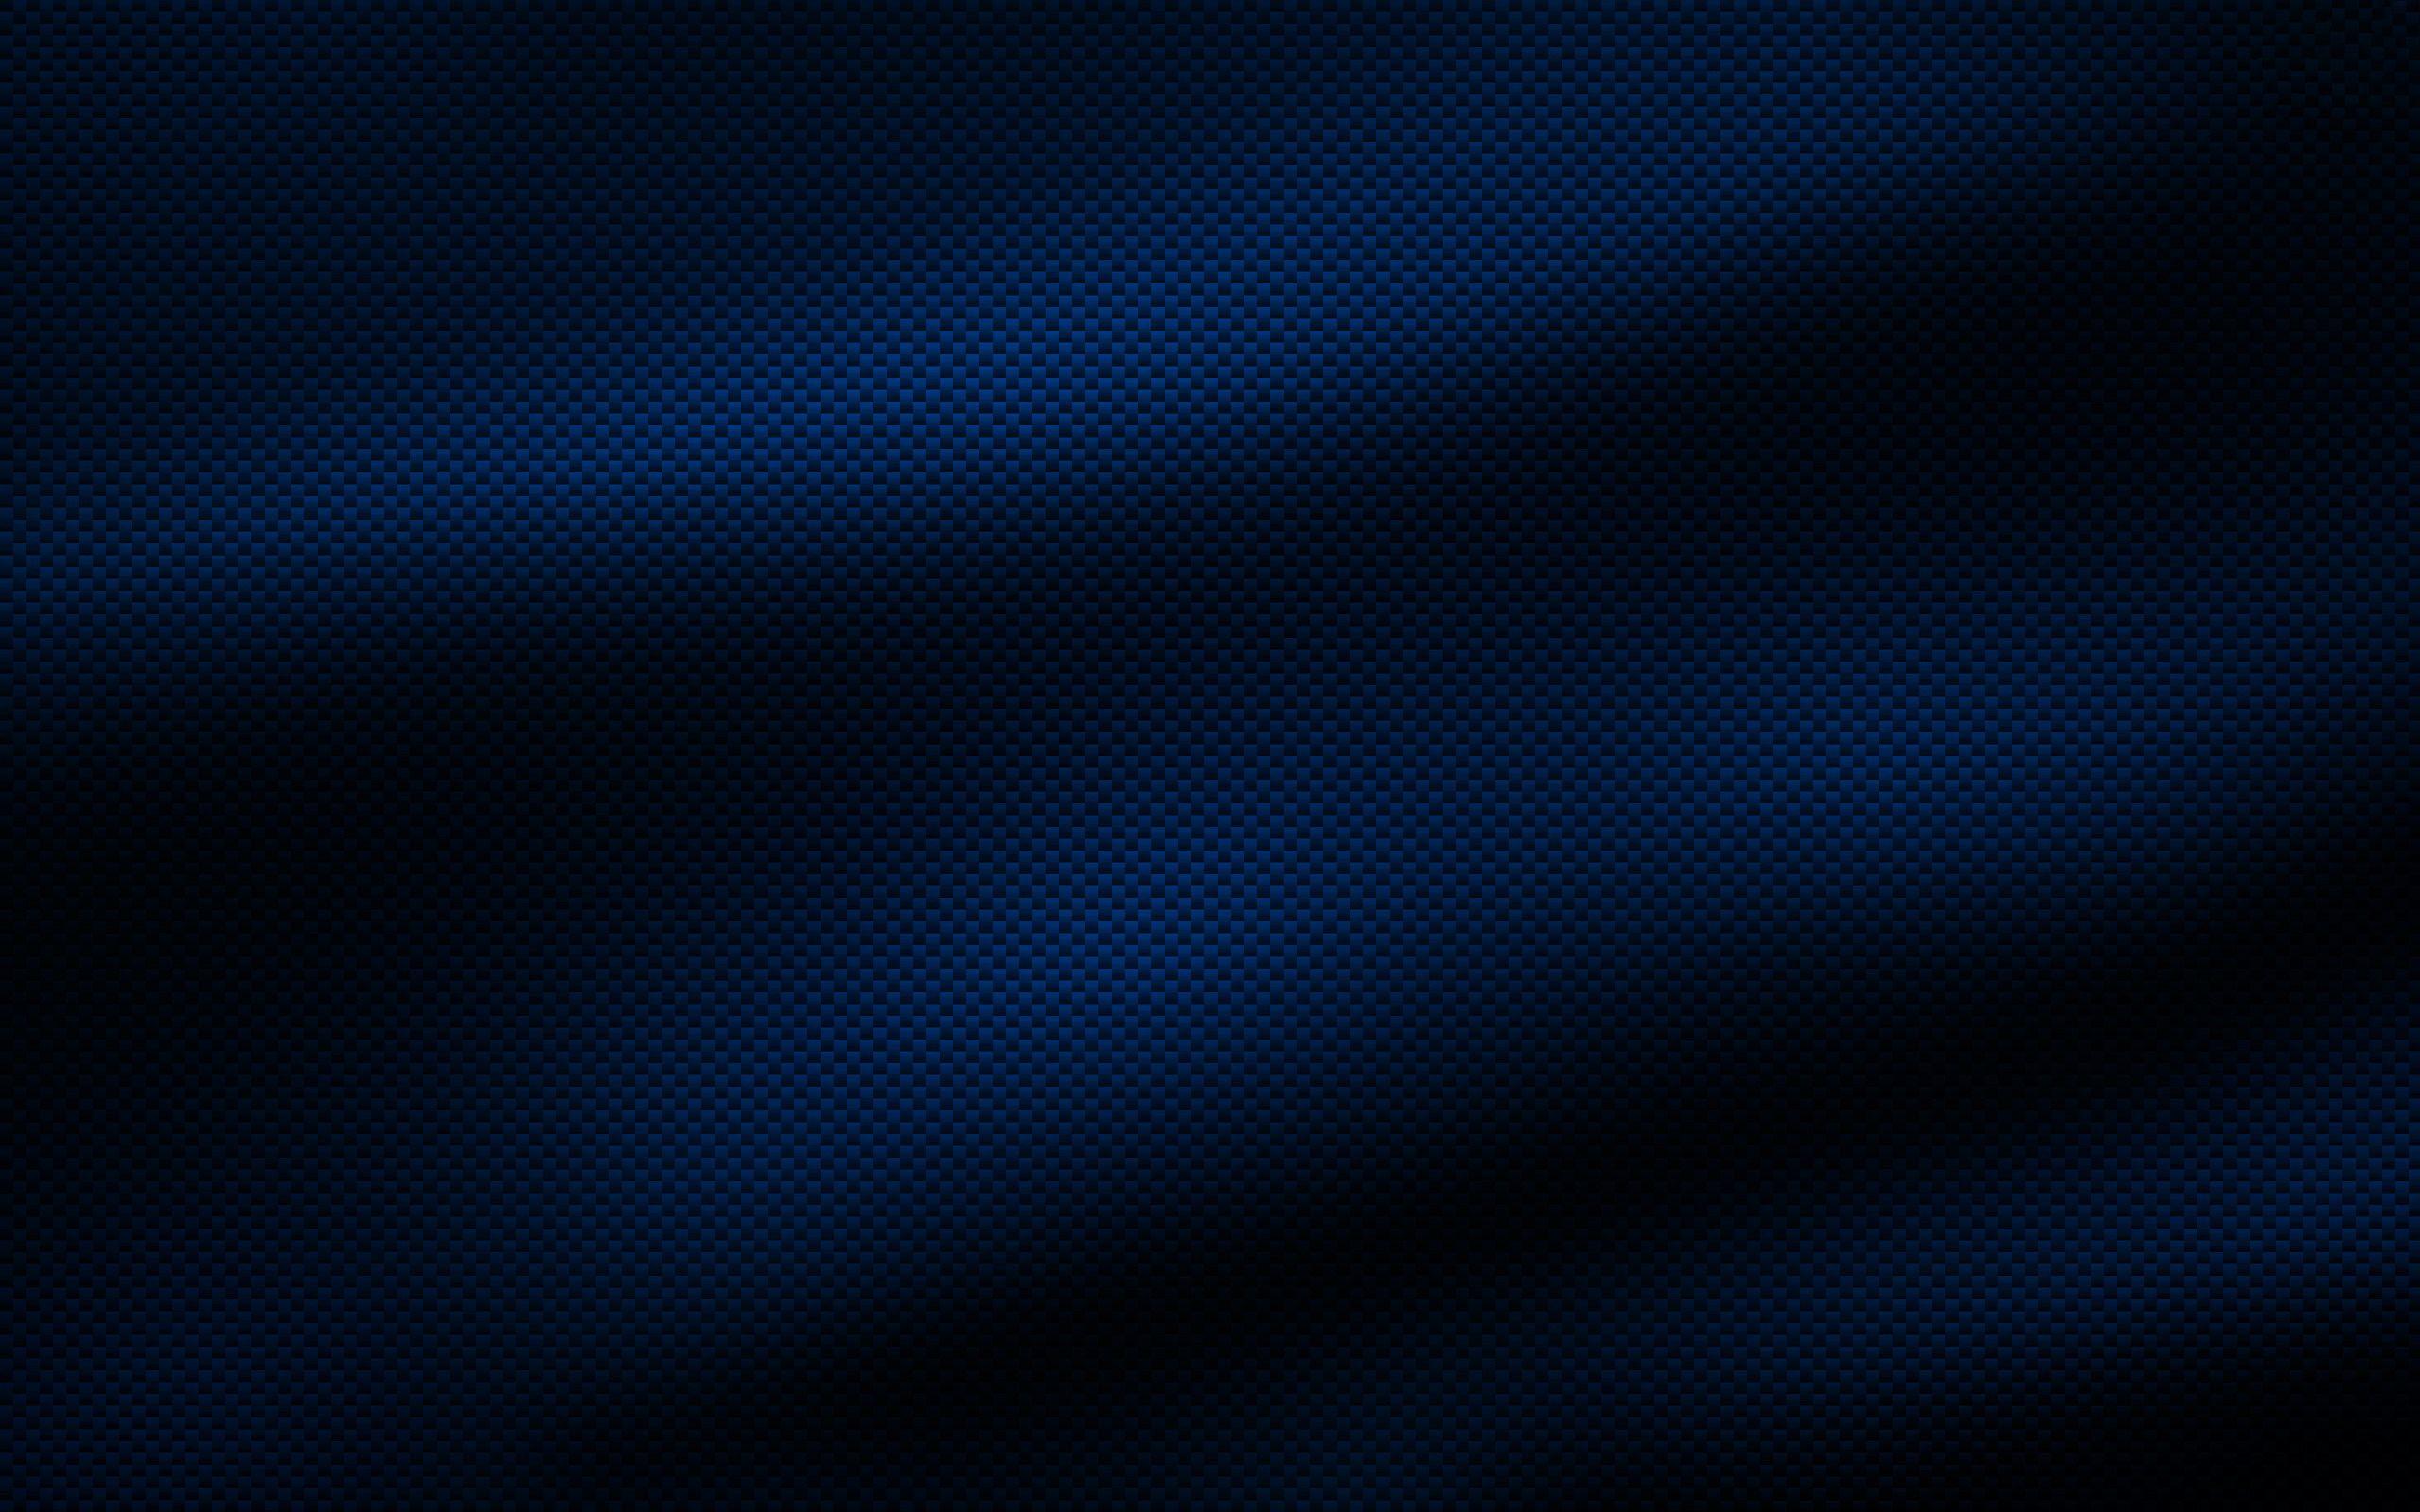 Blue Carbon Fiber Wallpaper HD Free Download